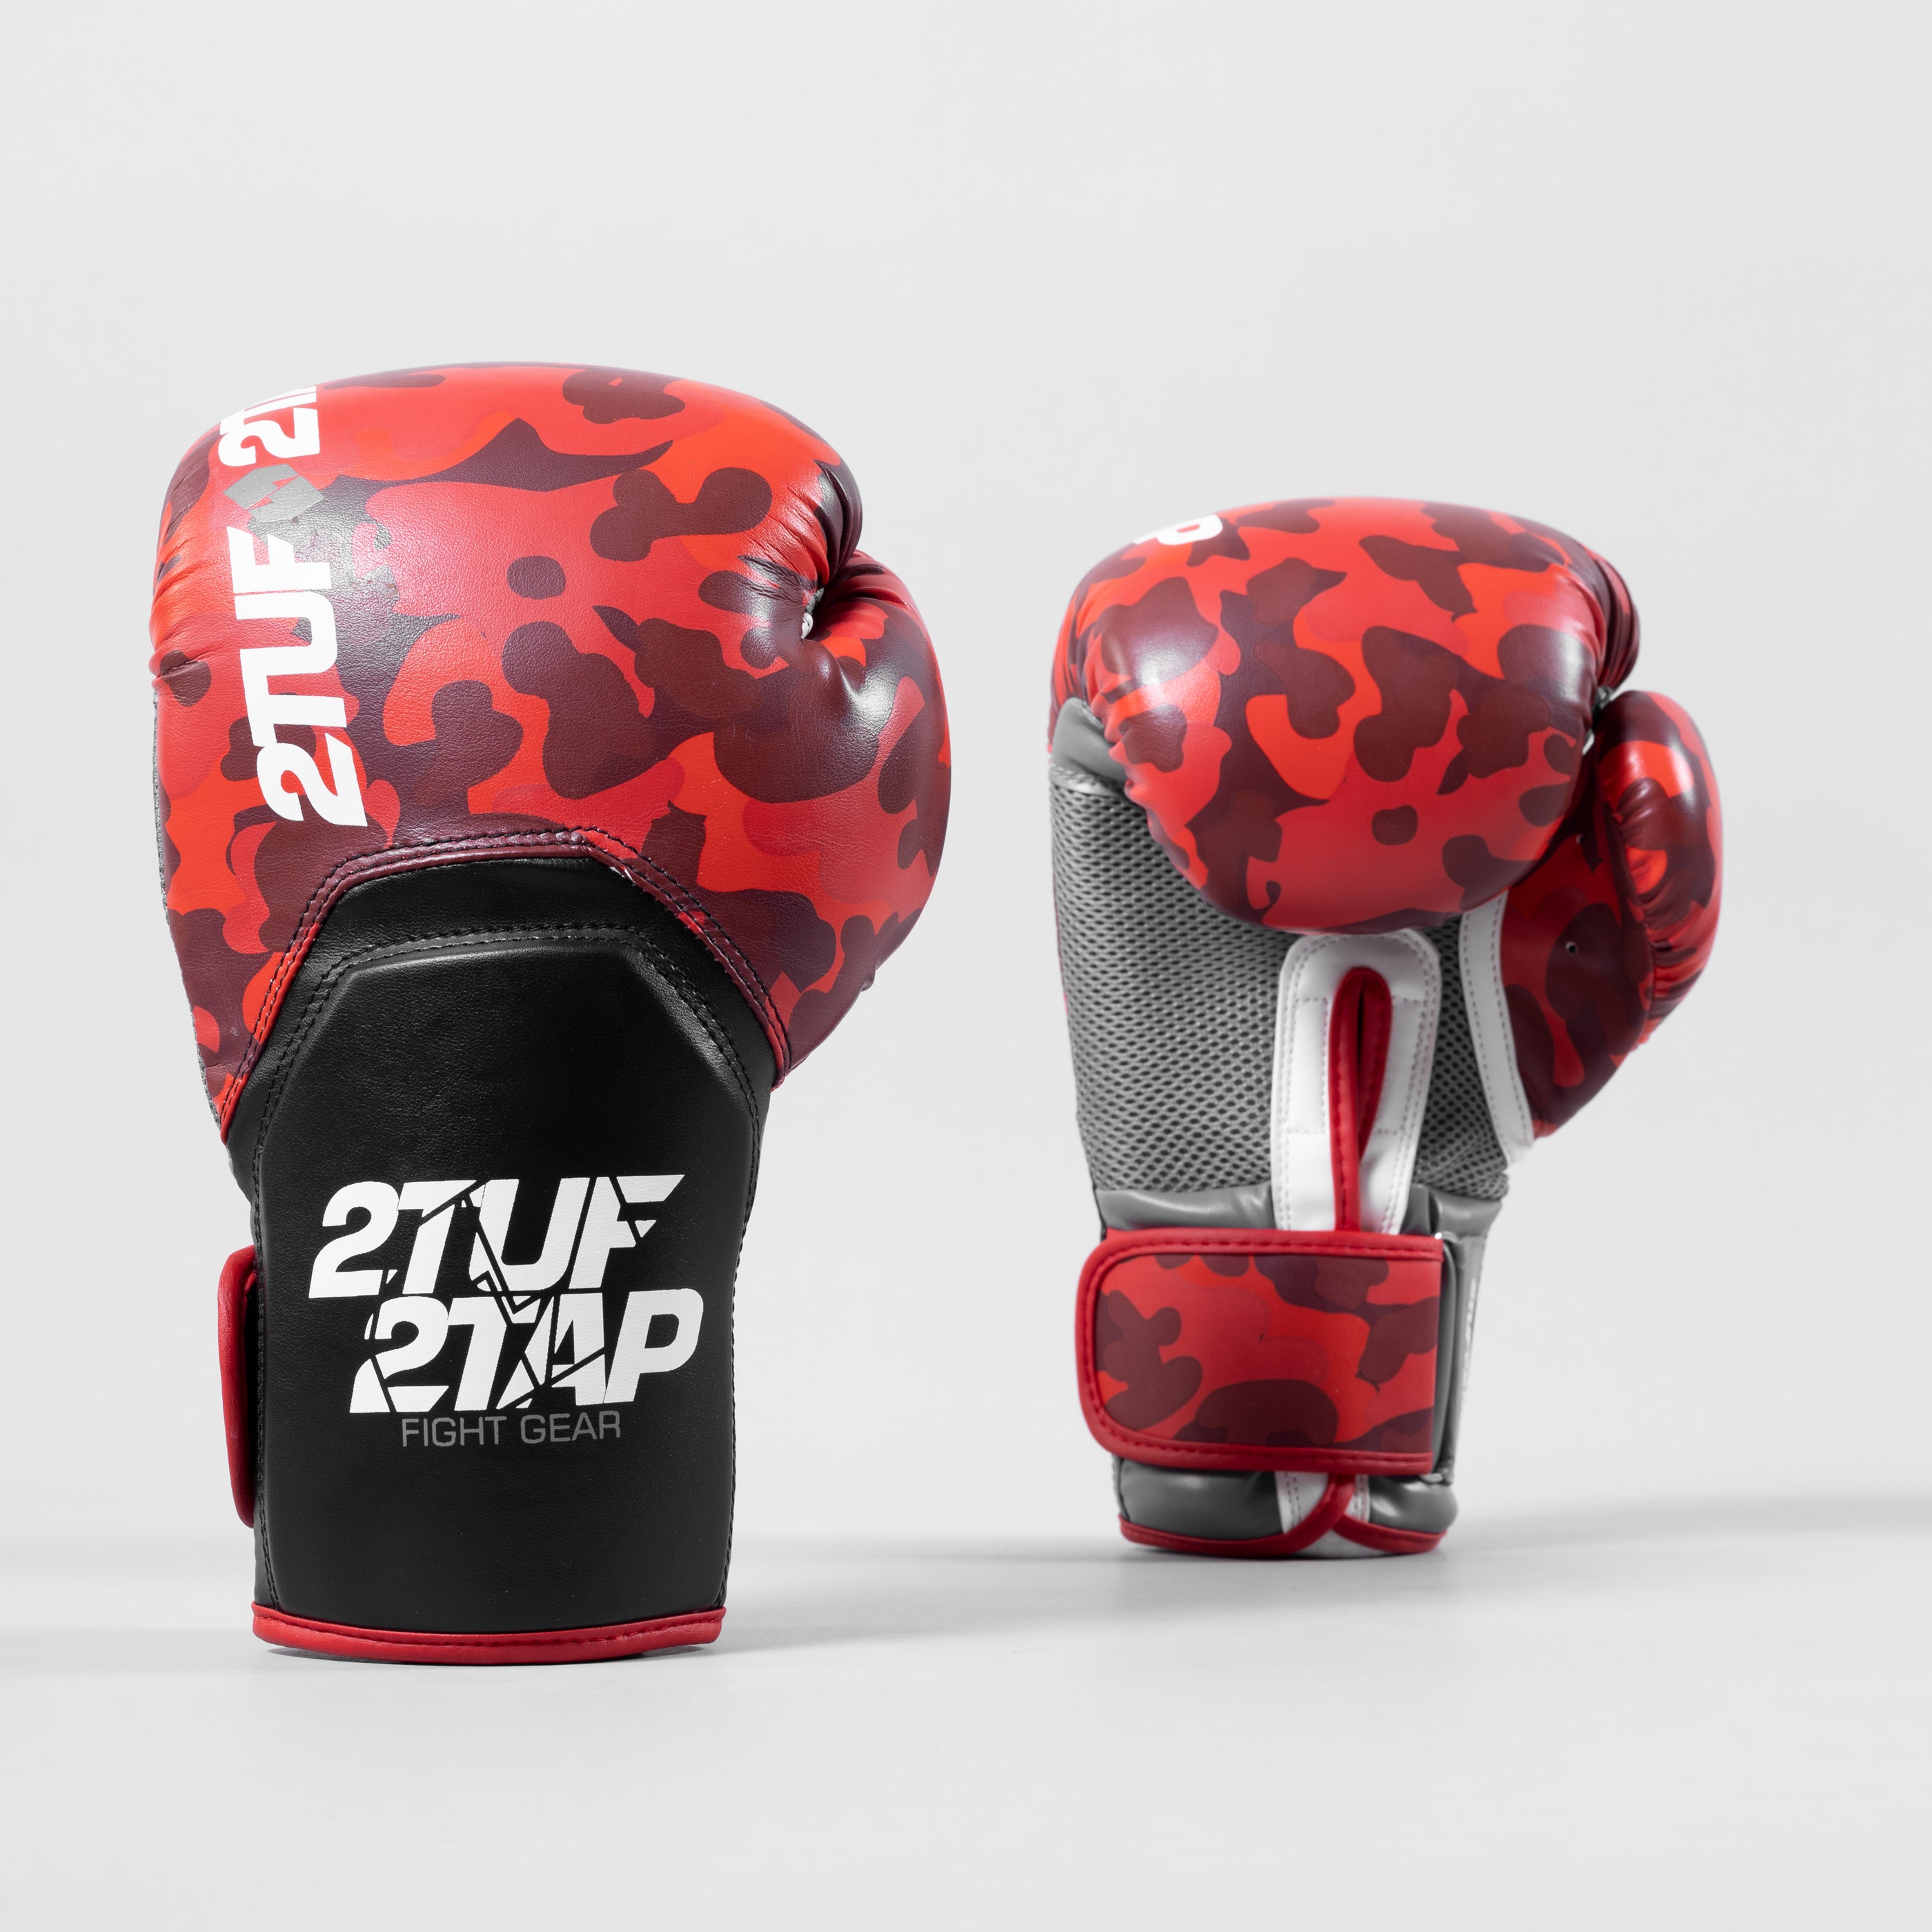 'Camo Elite' Boxing Gloves - Red/Black 2TUF2TAP